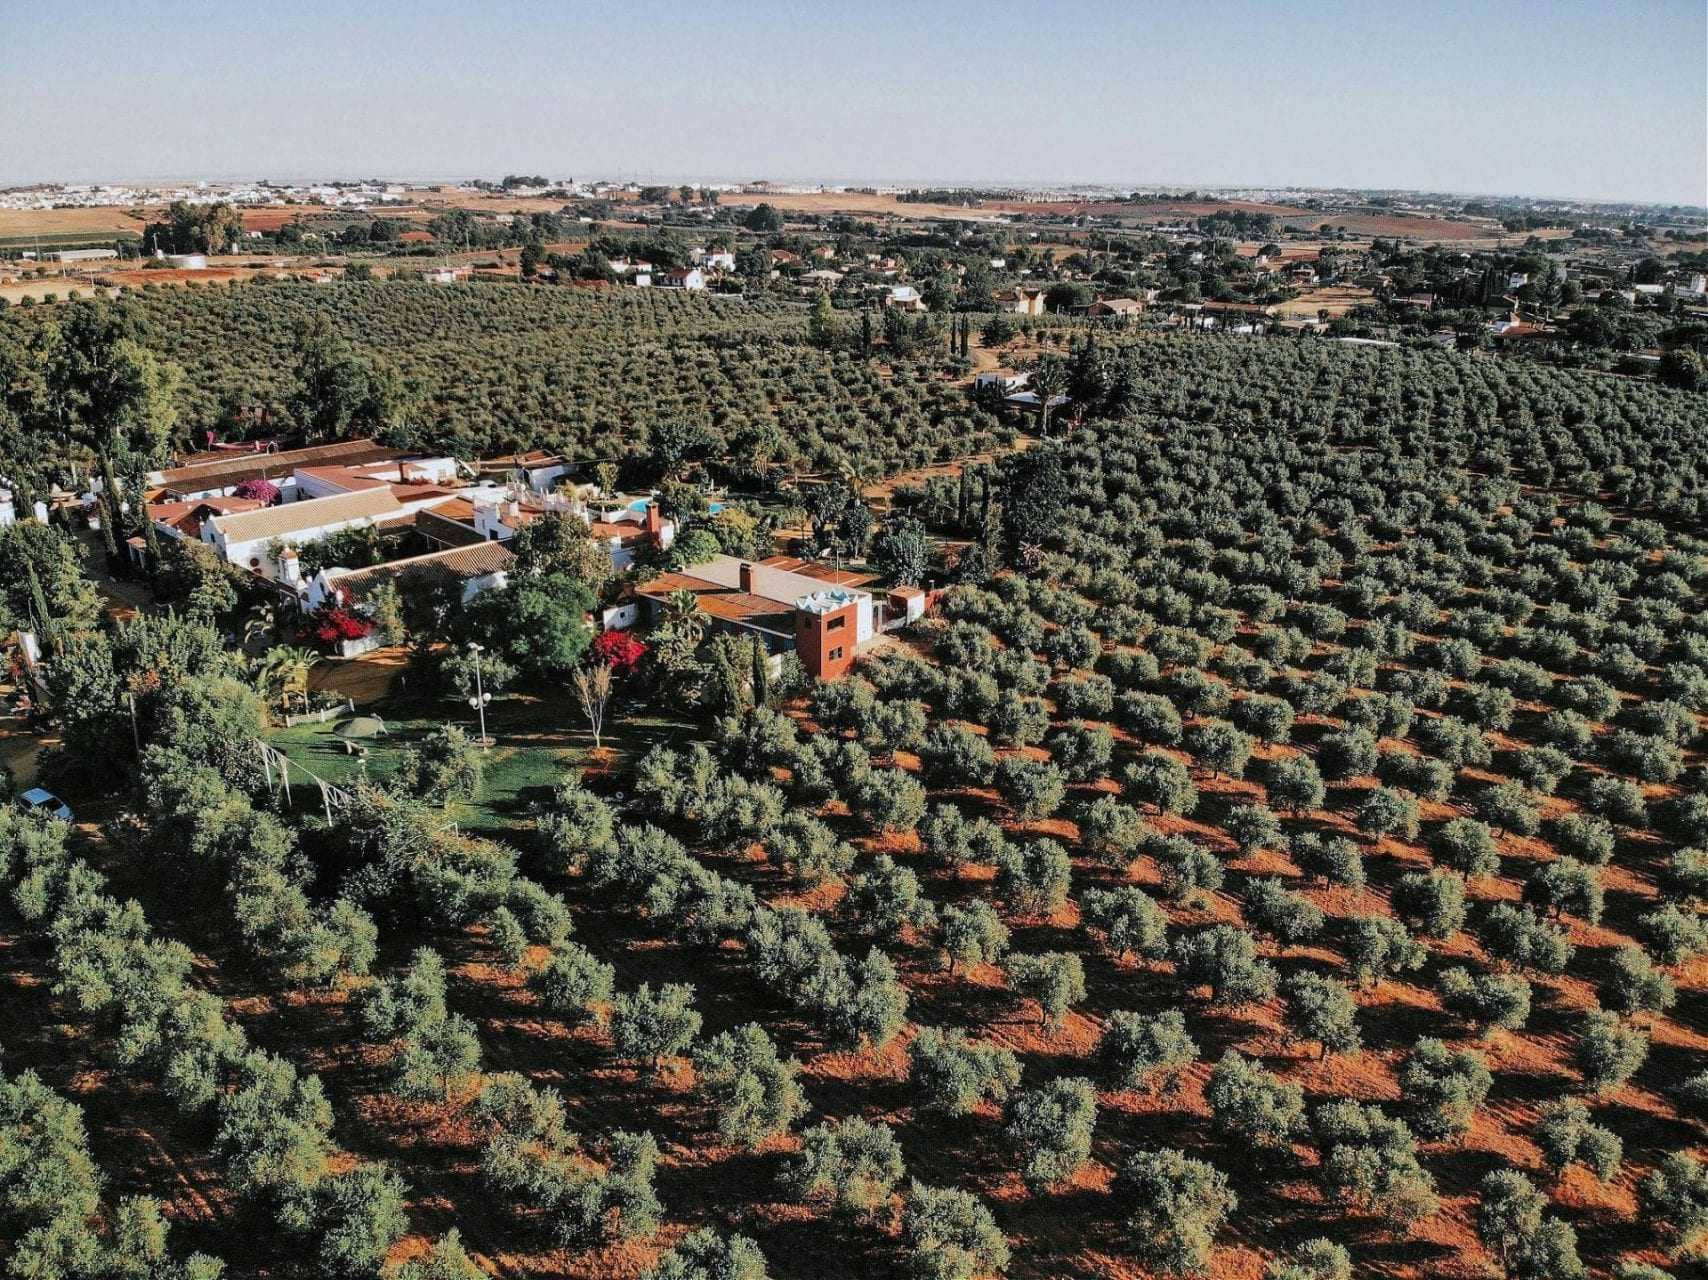 мировое производство-бизнес-климат-и-ковид-беспокойство-фермеры-готовятся-к-урожаю-времени-оливкового-масла